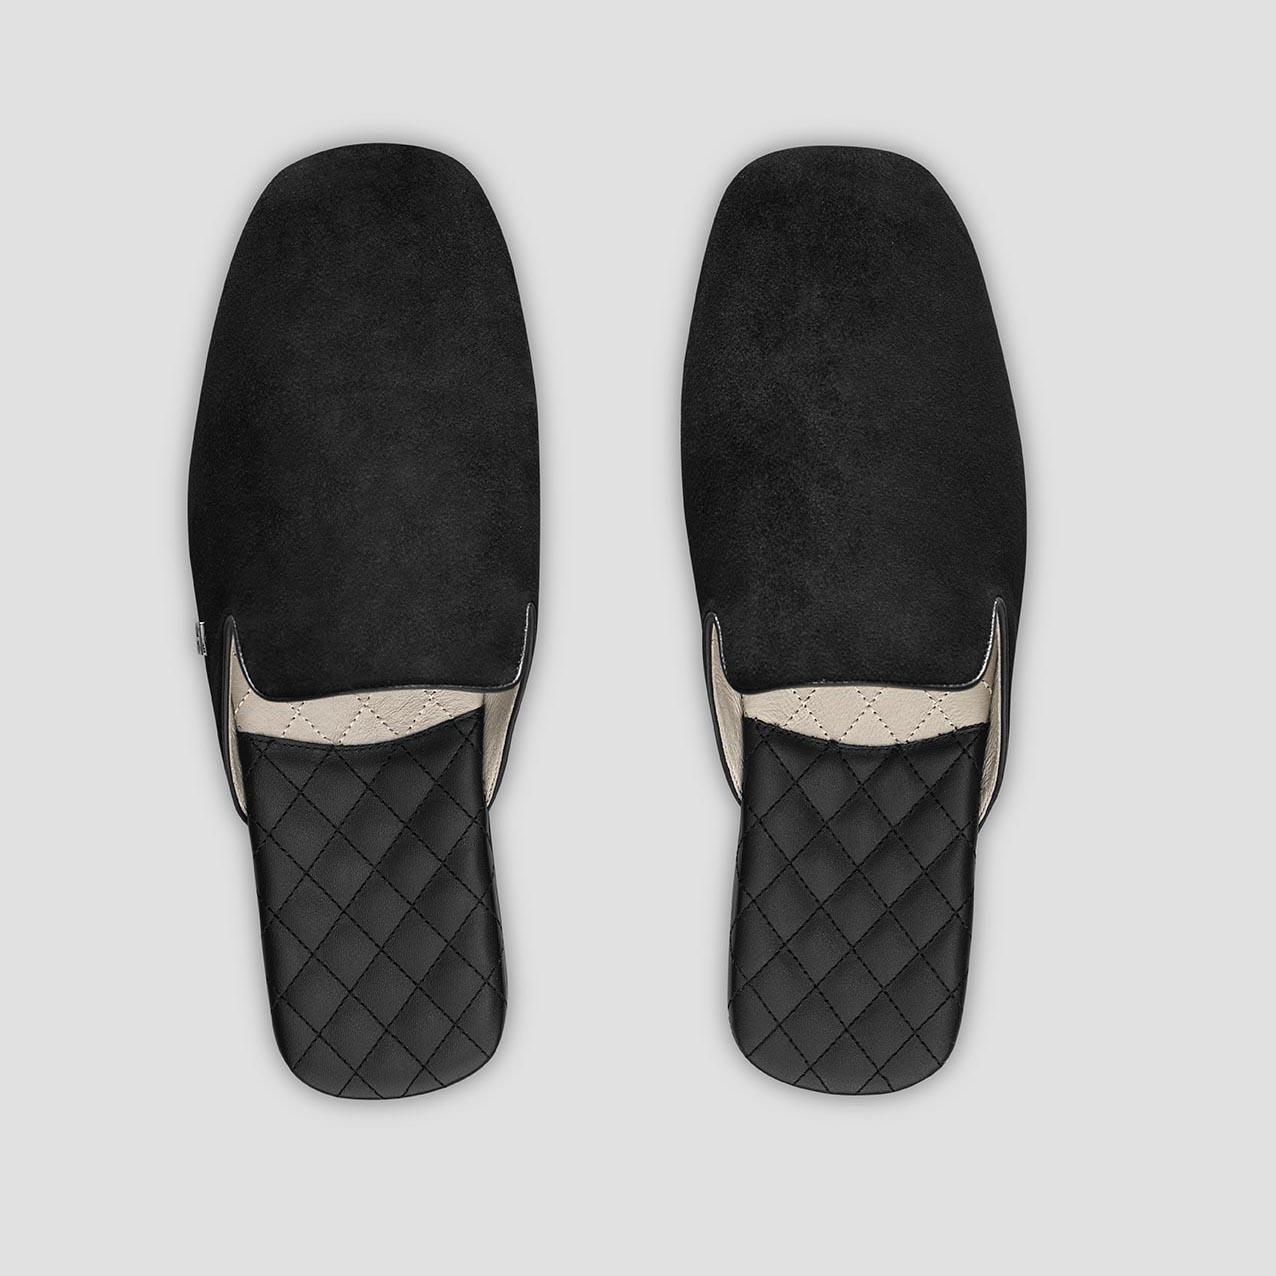 Тапочки Togas Реон черные мужские кожаные, размер 44-45